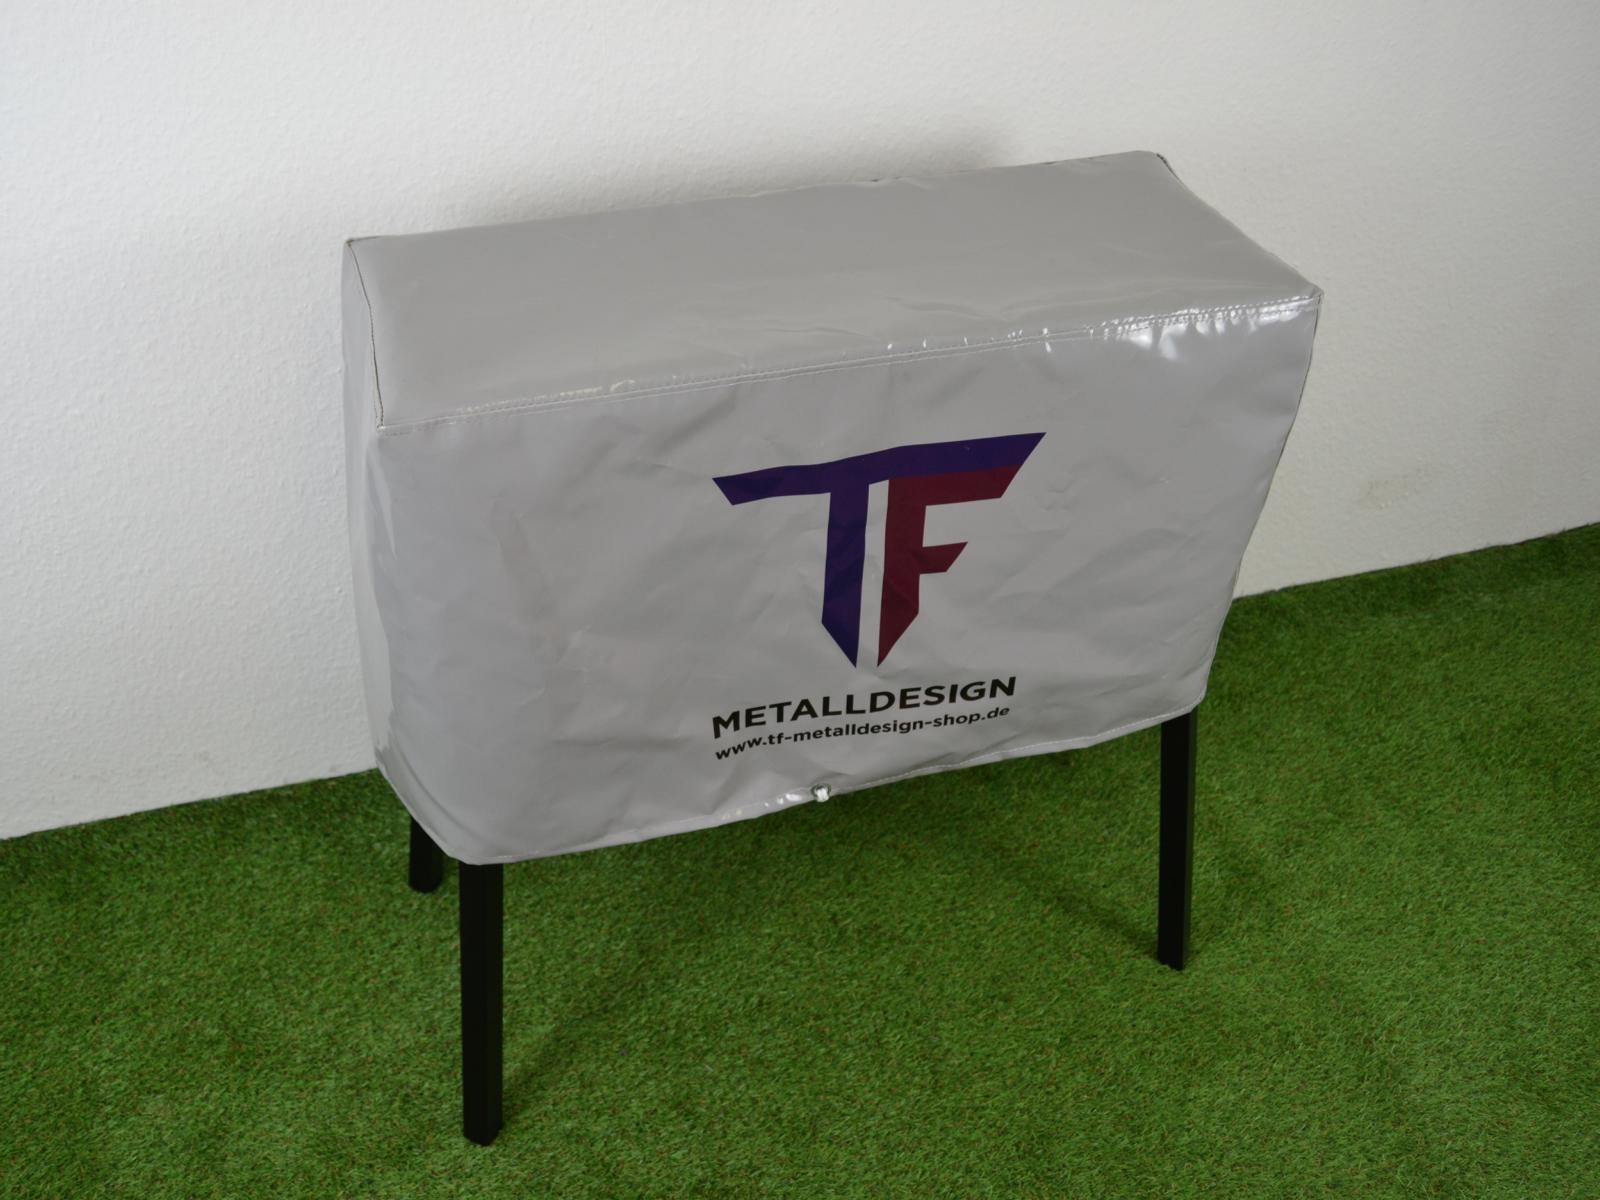 ᐅ TF Metalldesign Shop ᐅ Schutzhülle / Abdeckung aus PVC für